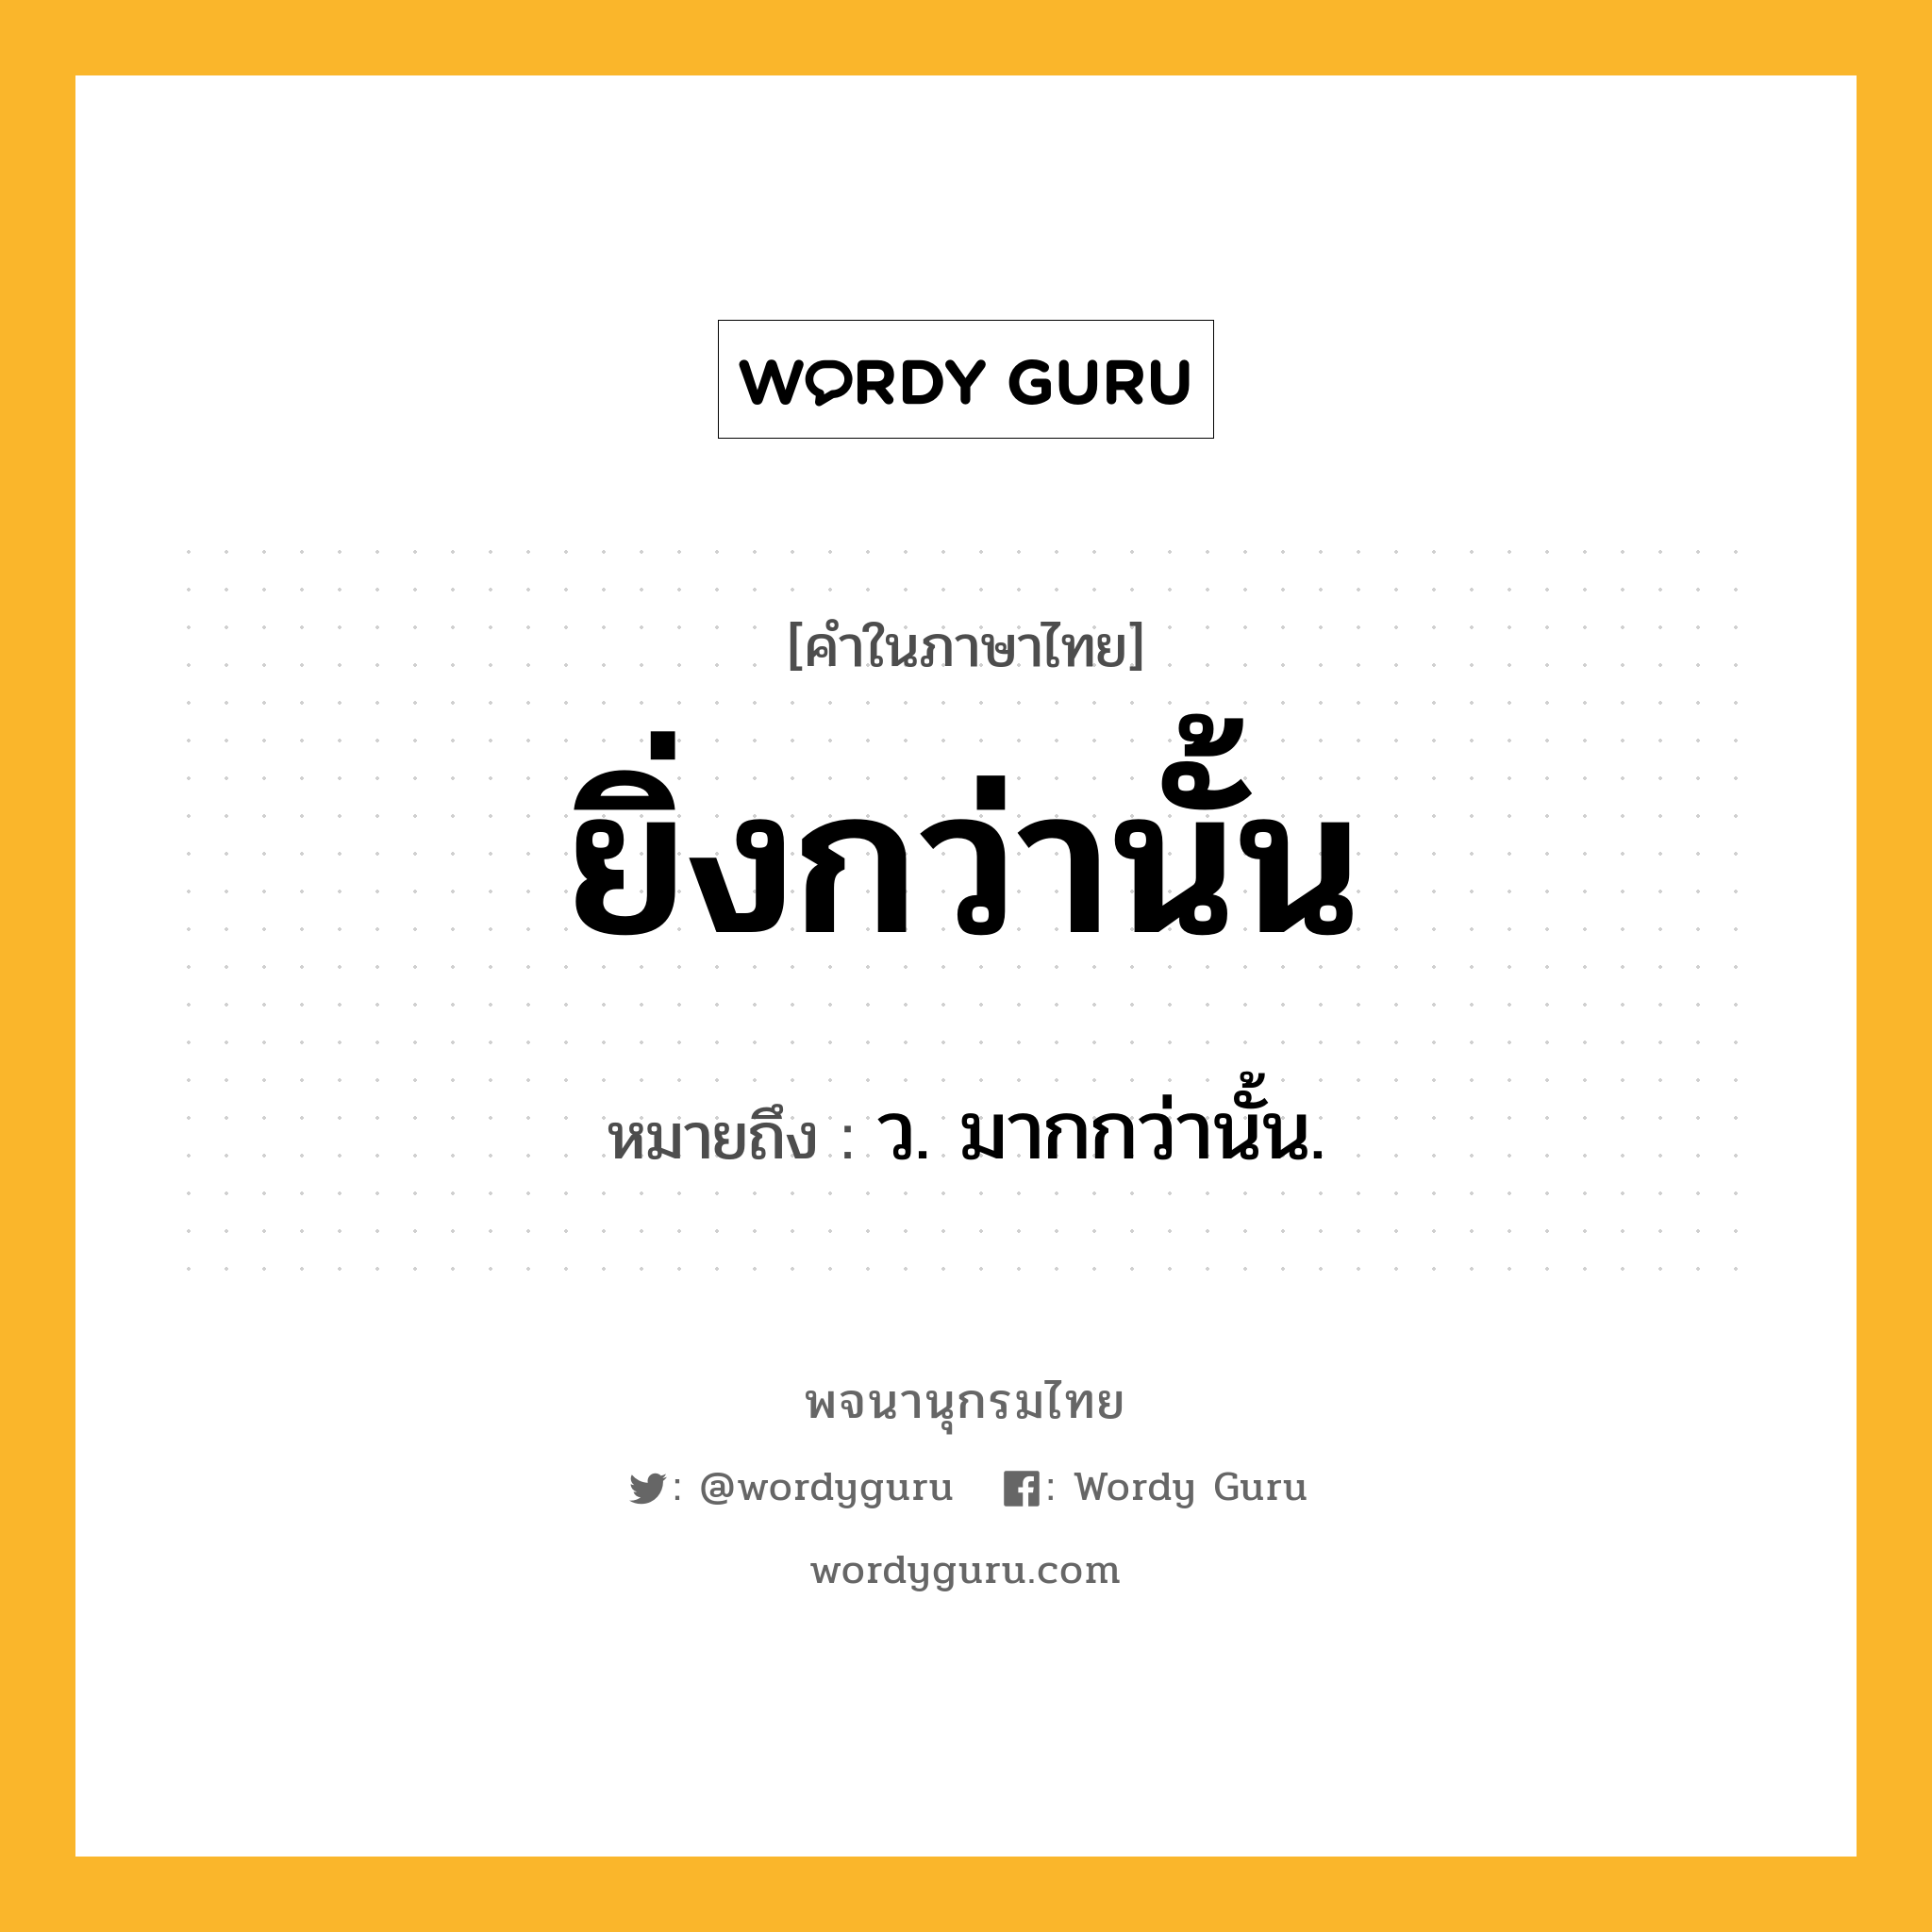 ยิ่งกว่านั้น ความหมาย หมายถึงอะไร?, คำในภาษาไทย ยิ่งกว่านั้น หมายถึง ว. มากกว่านั้น.